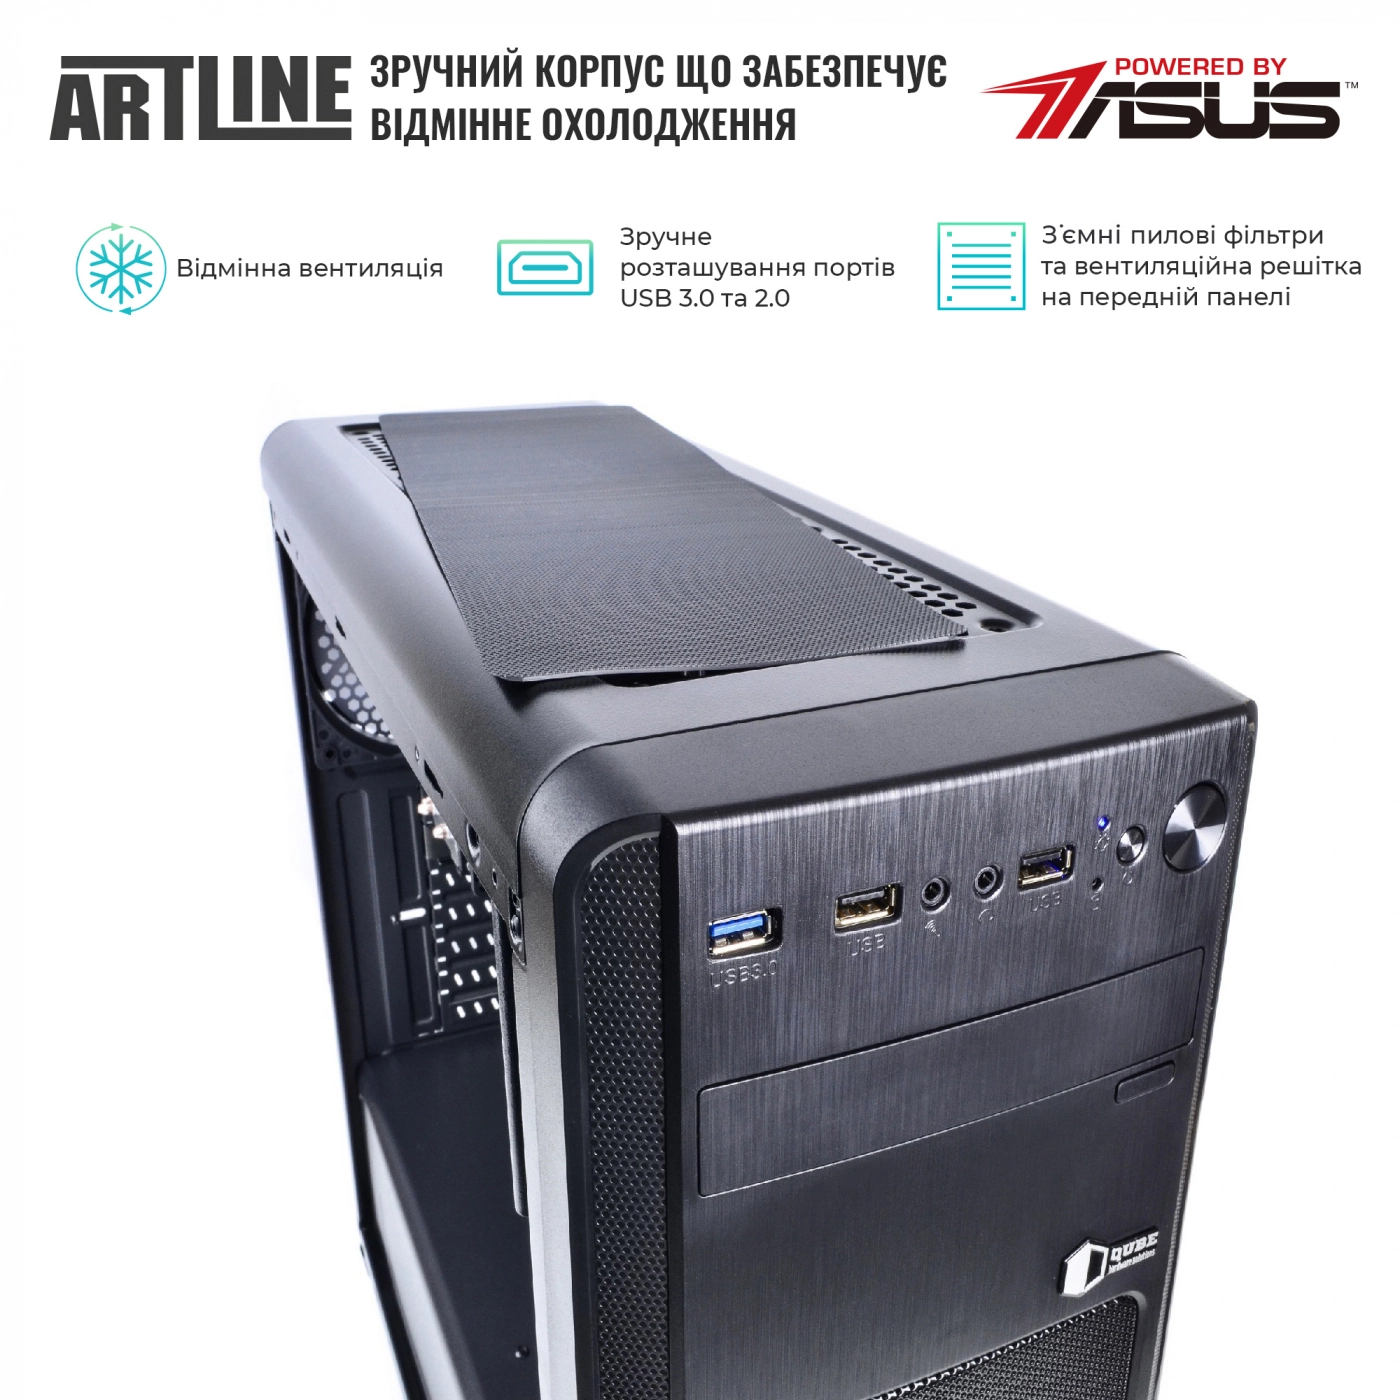 Купить Сервер ARTLINE Business T63v08 - фото 2